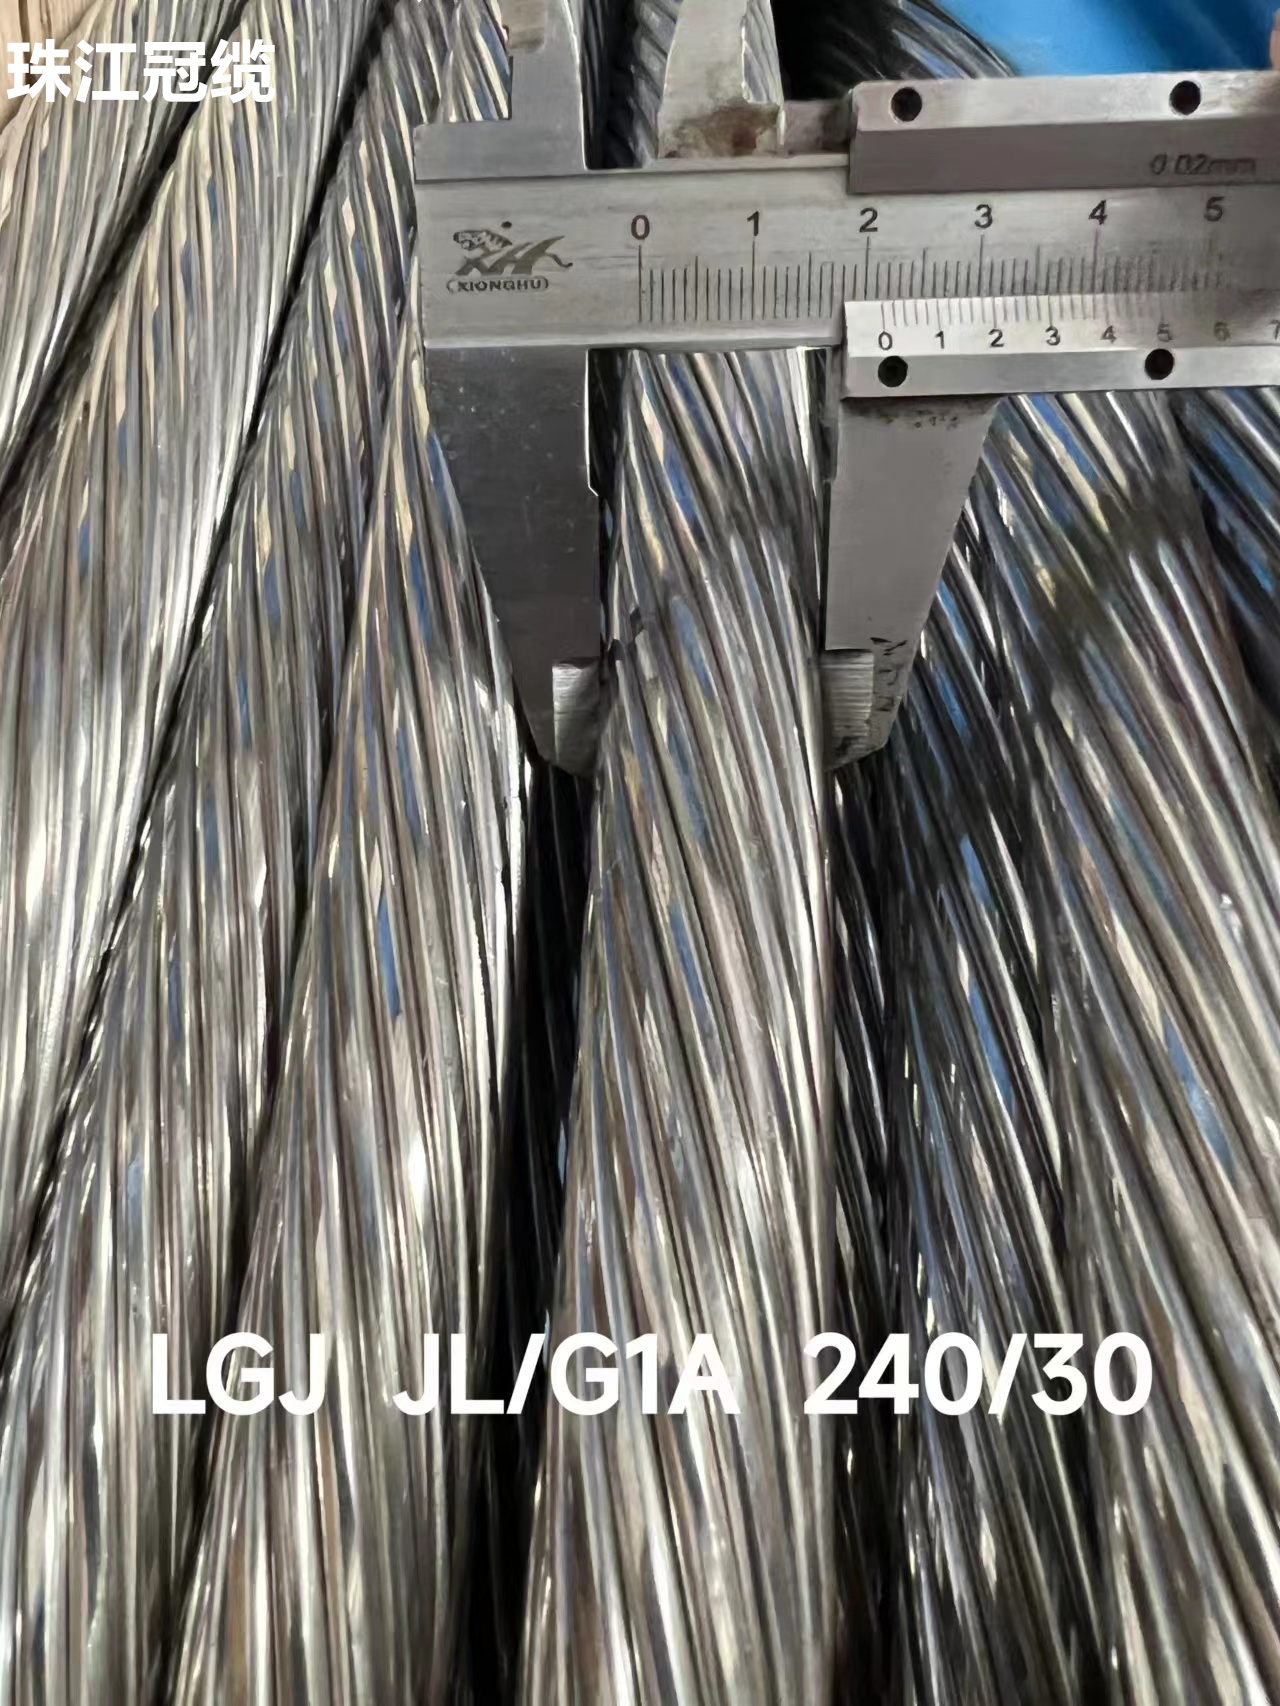 广东珠江冠缆 LGJ JL/G1A 240/30钢芯铝绞线